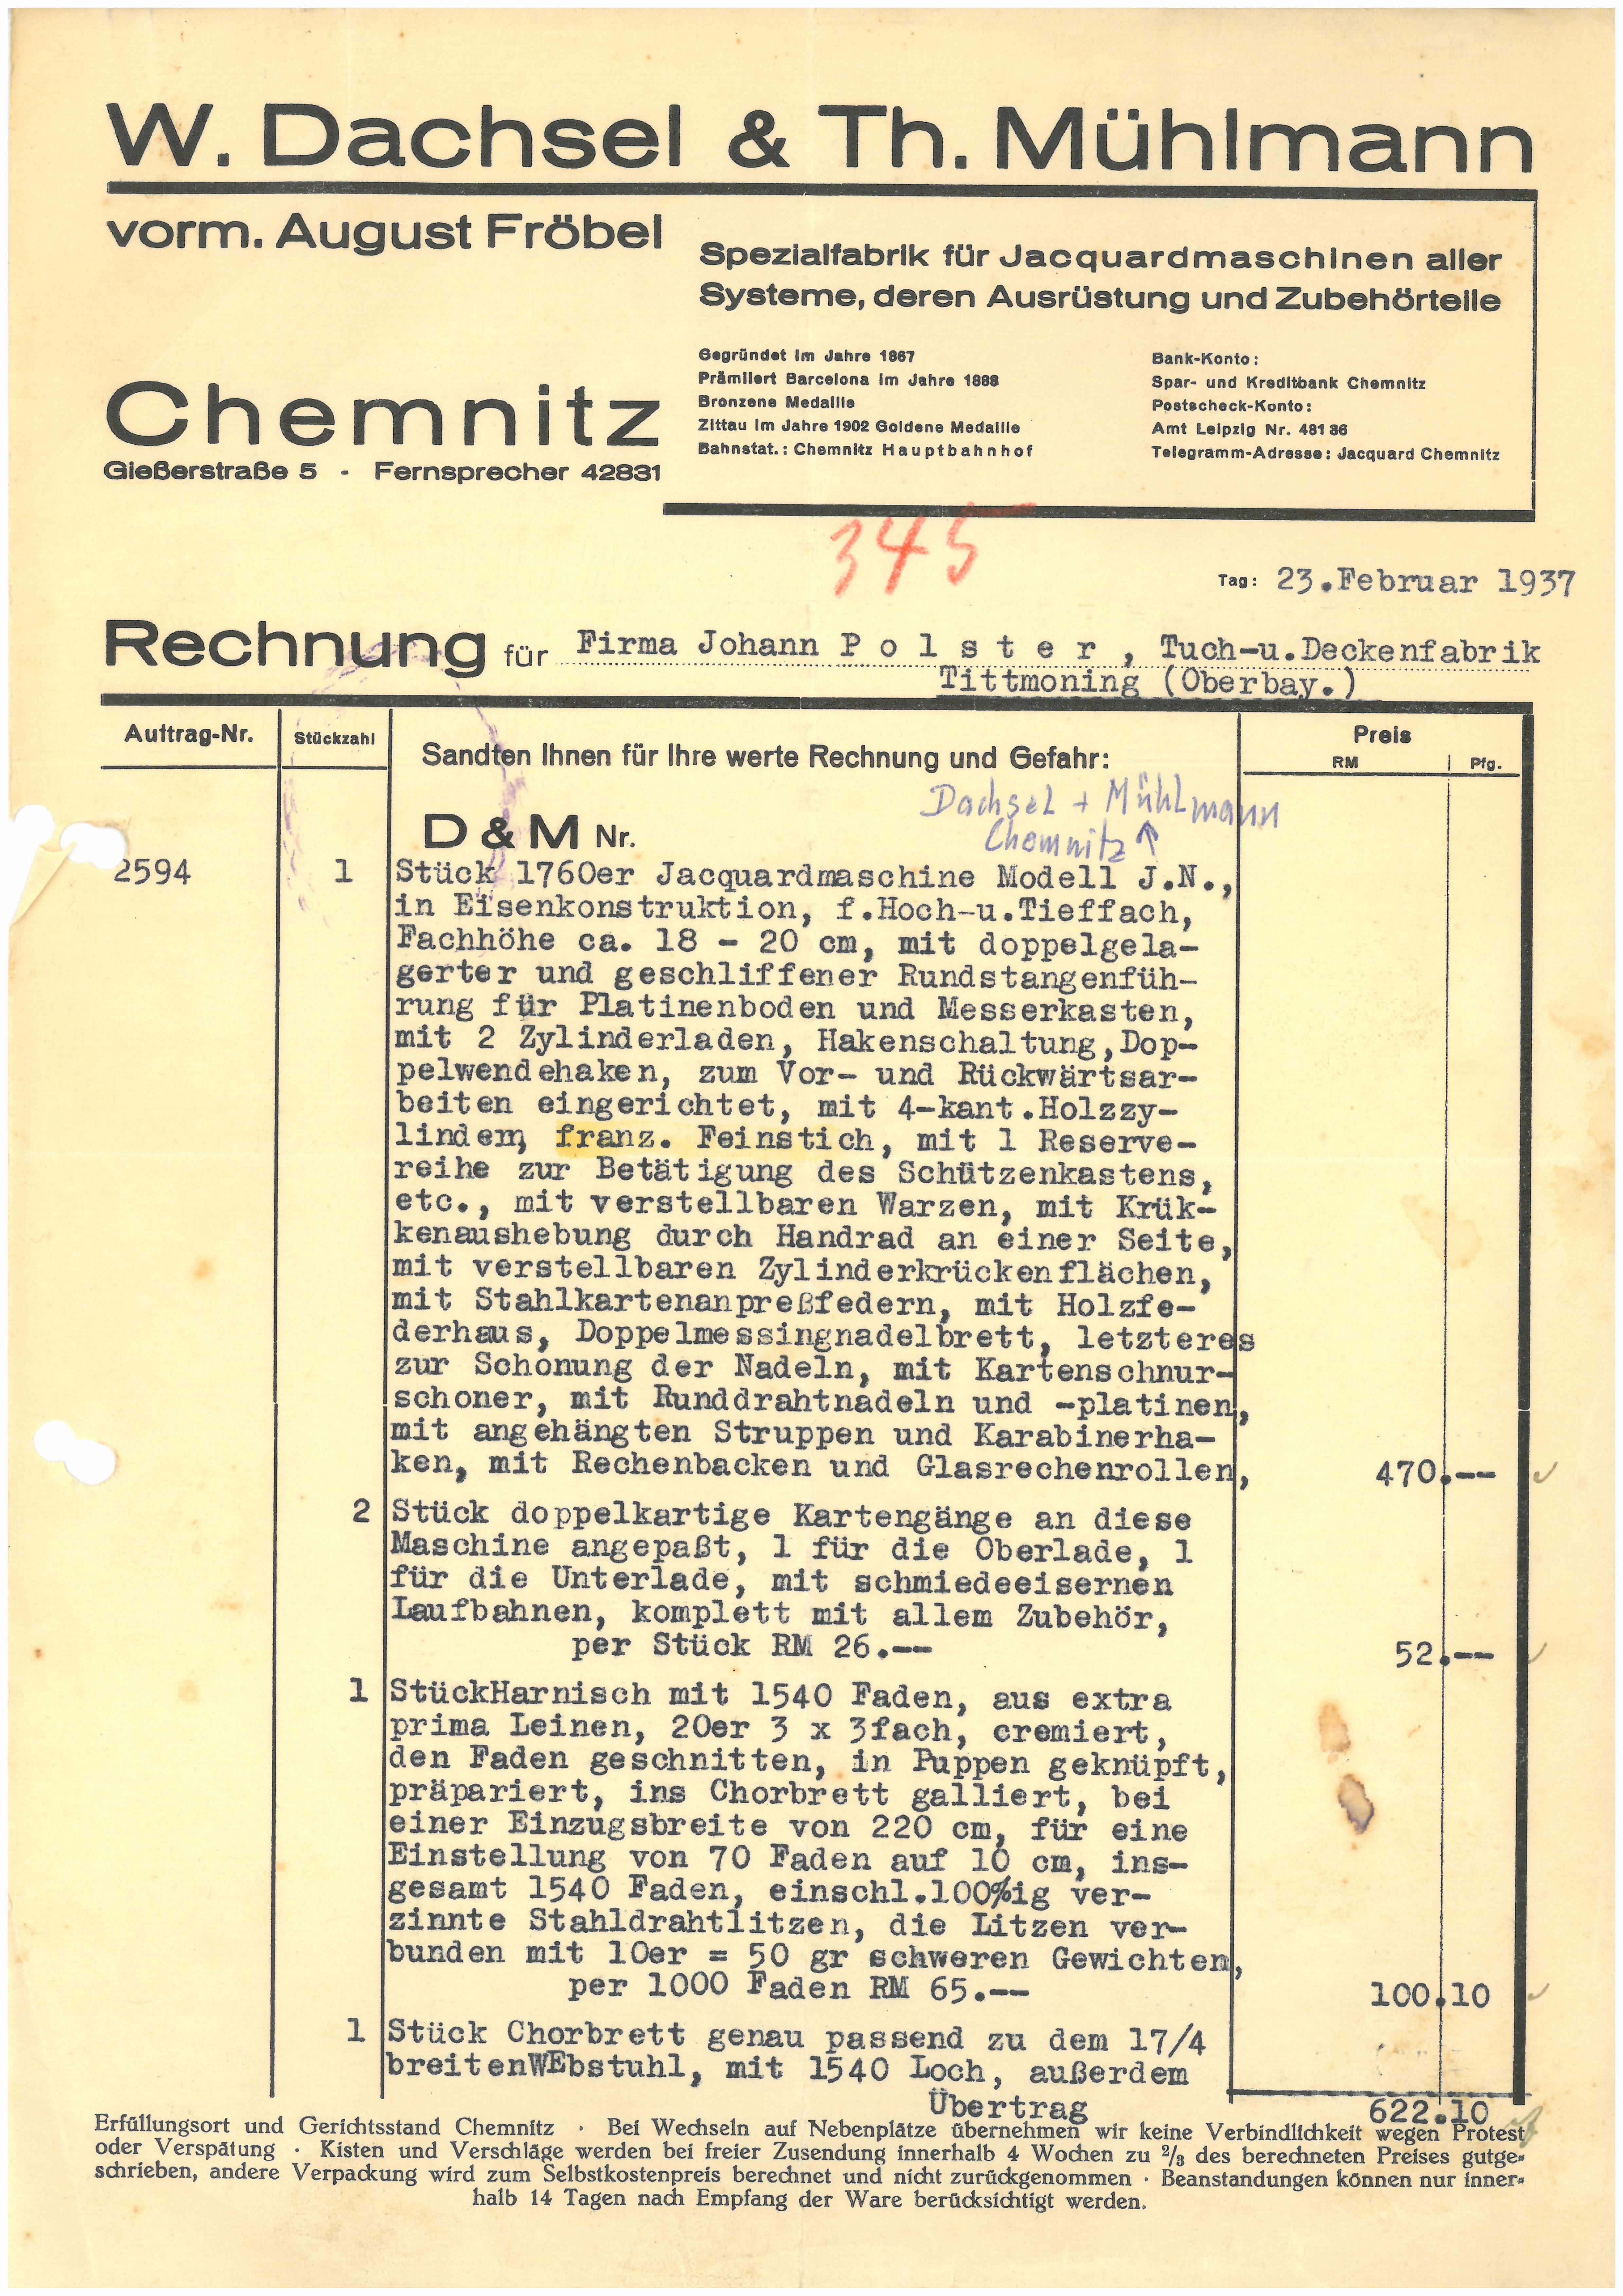 Rechnung der Fa. OHG W. Dachsel & Th. Mühlmann vom 23. Februar 1937 (Tuchmacher Museum Bramsche CC BY-NC-SA)